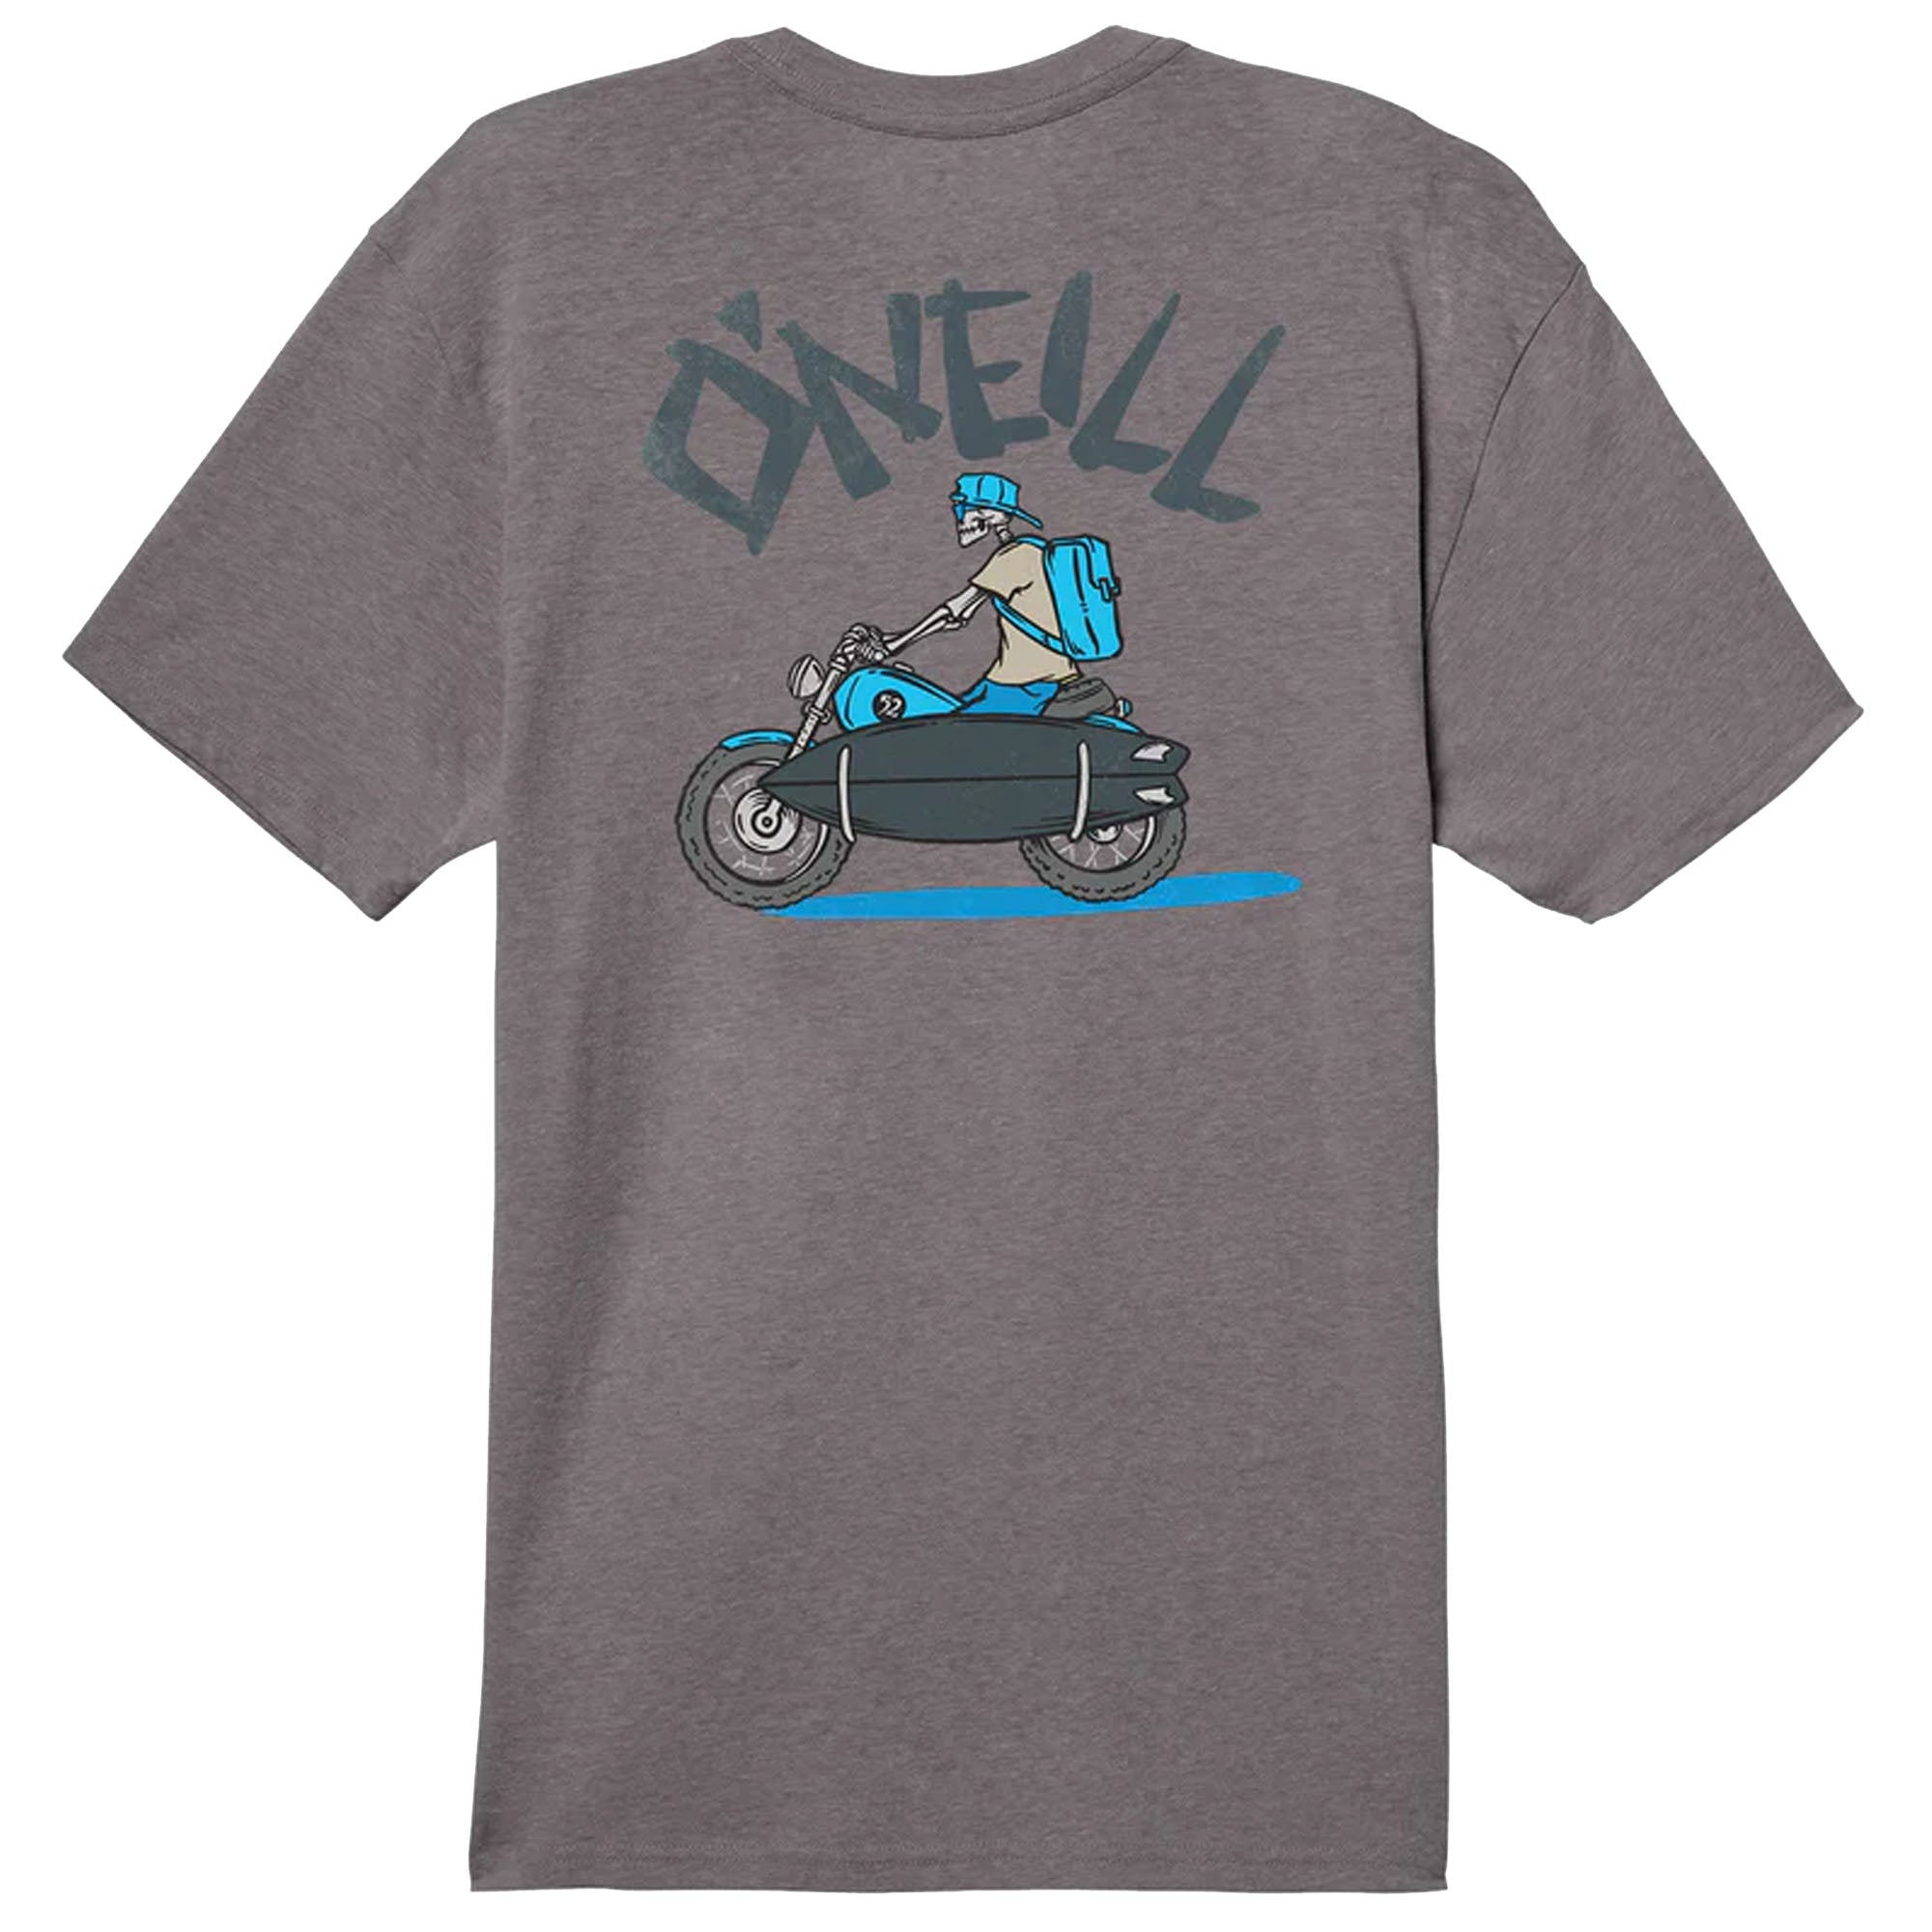 O'Neill Bones Jones Men's S/S T-Shirt